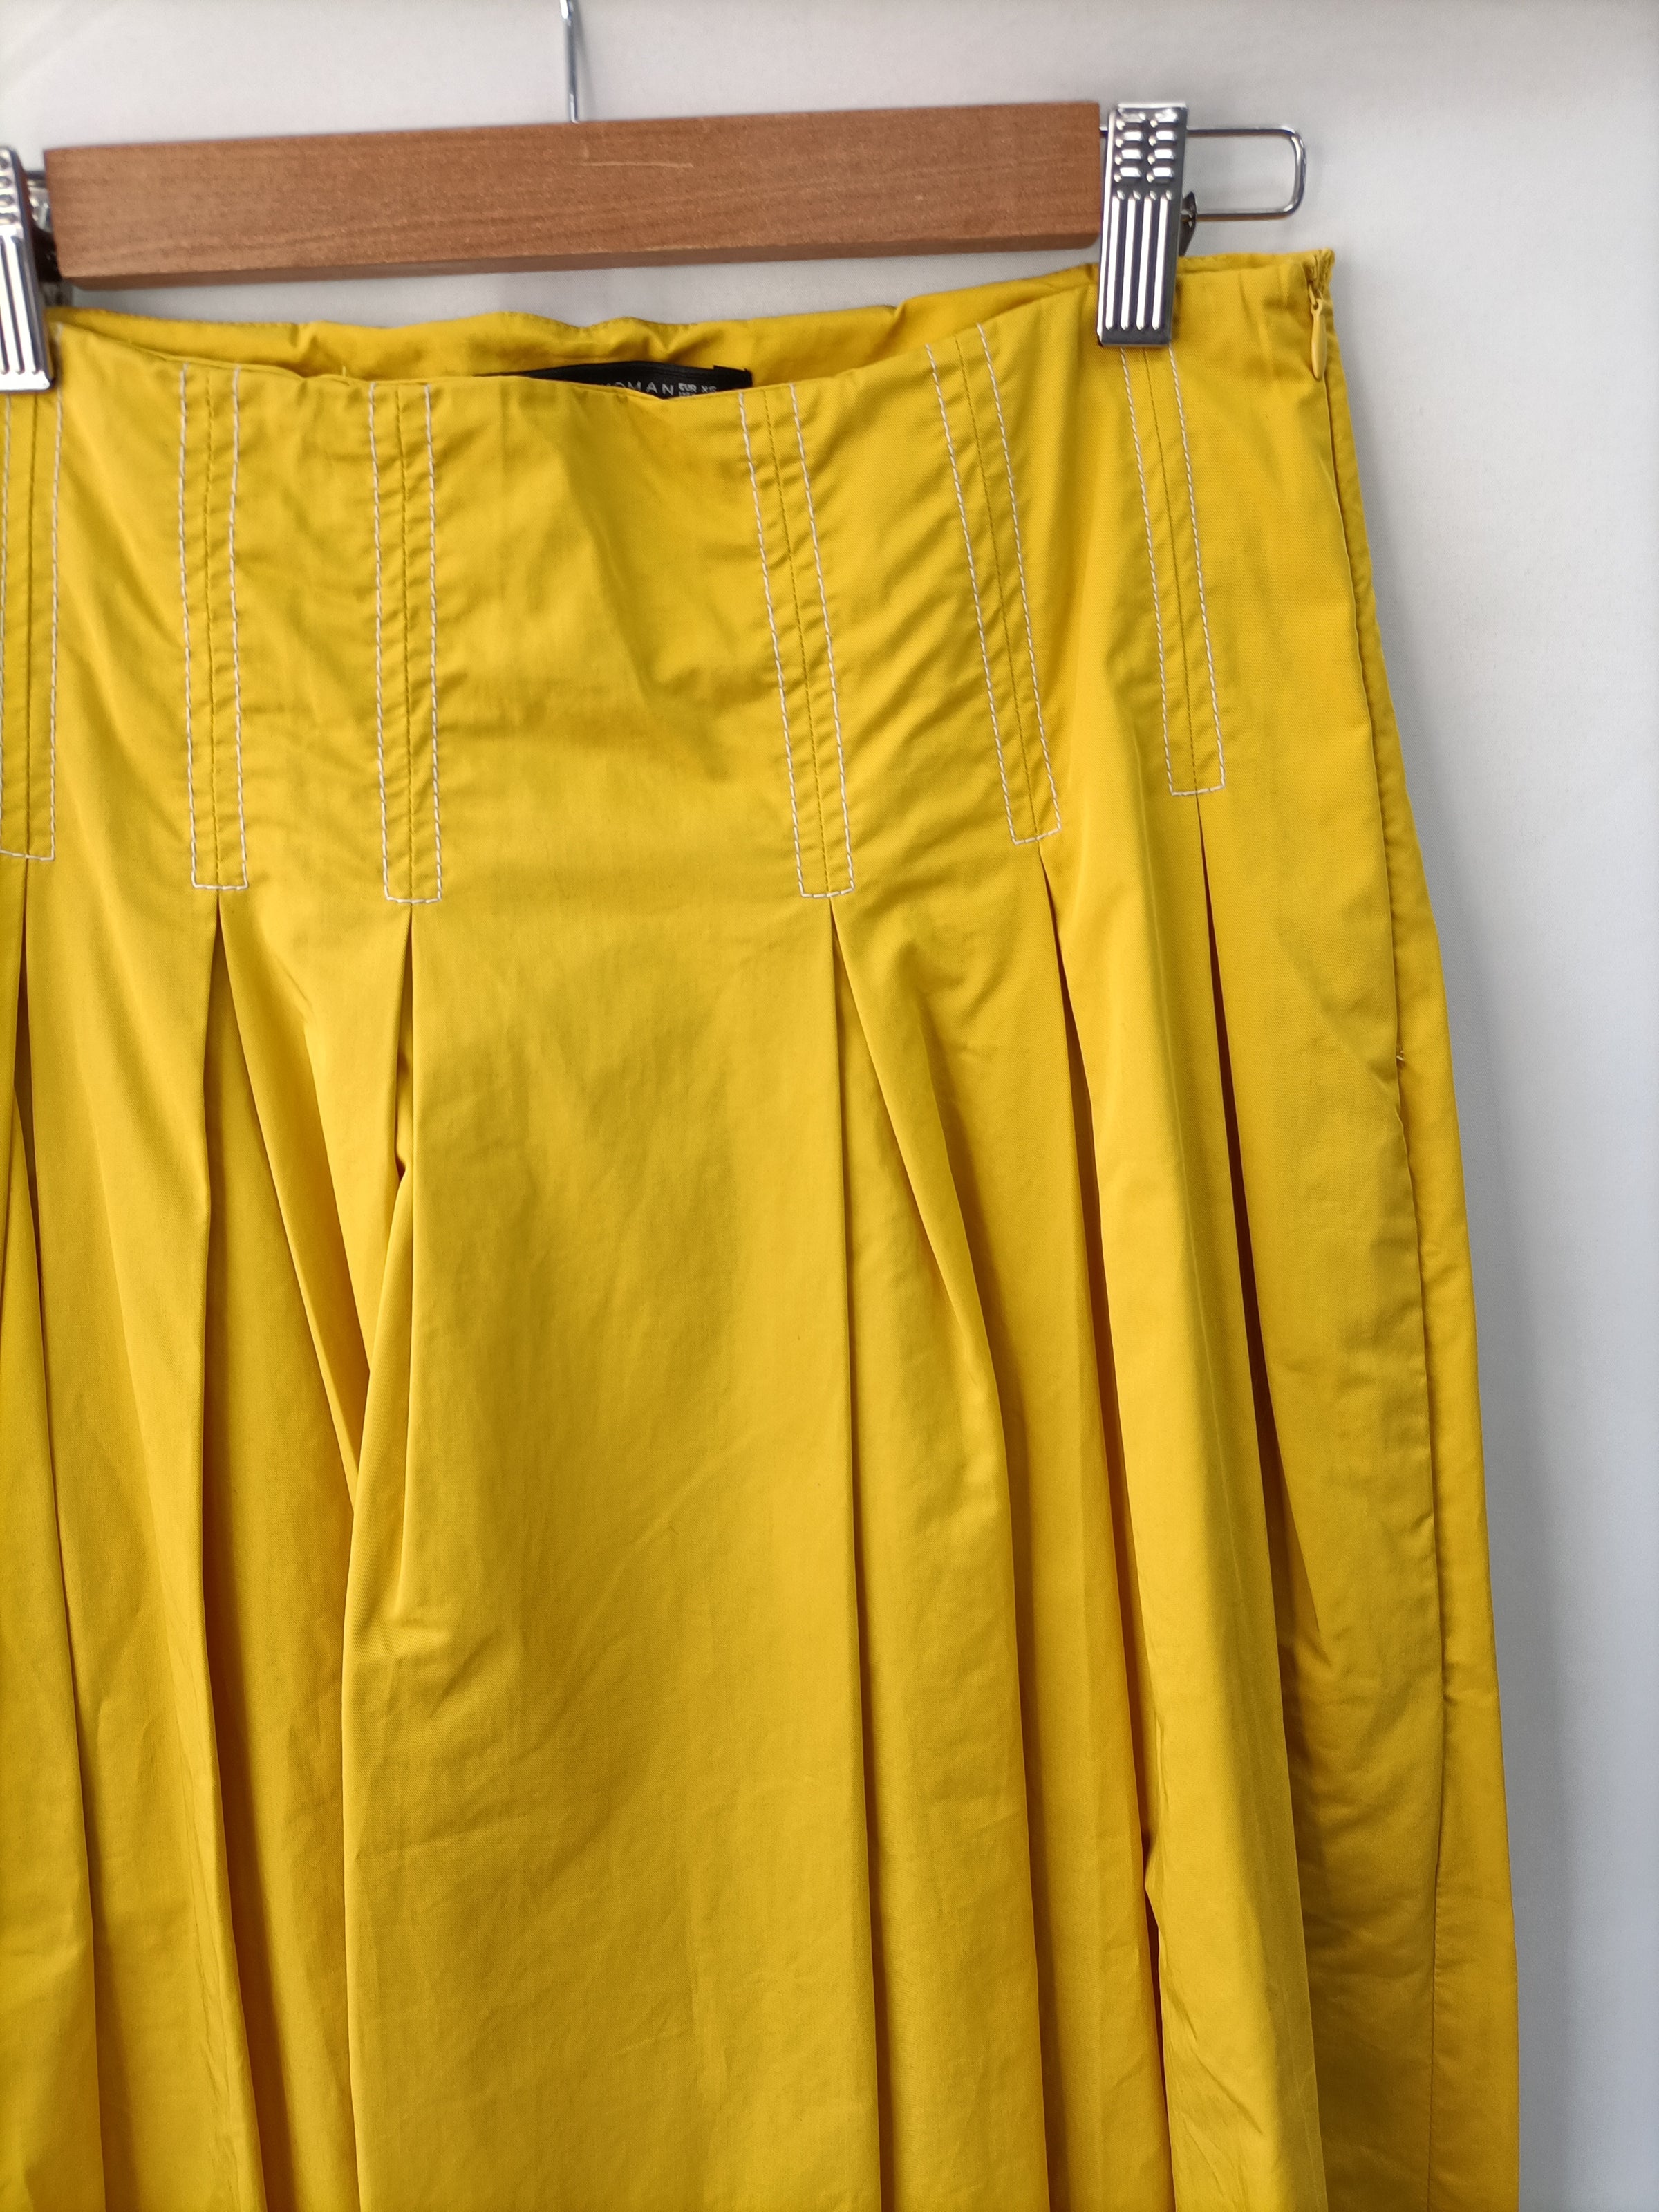 Falda amarilla T.xs – Hibuy market